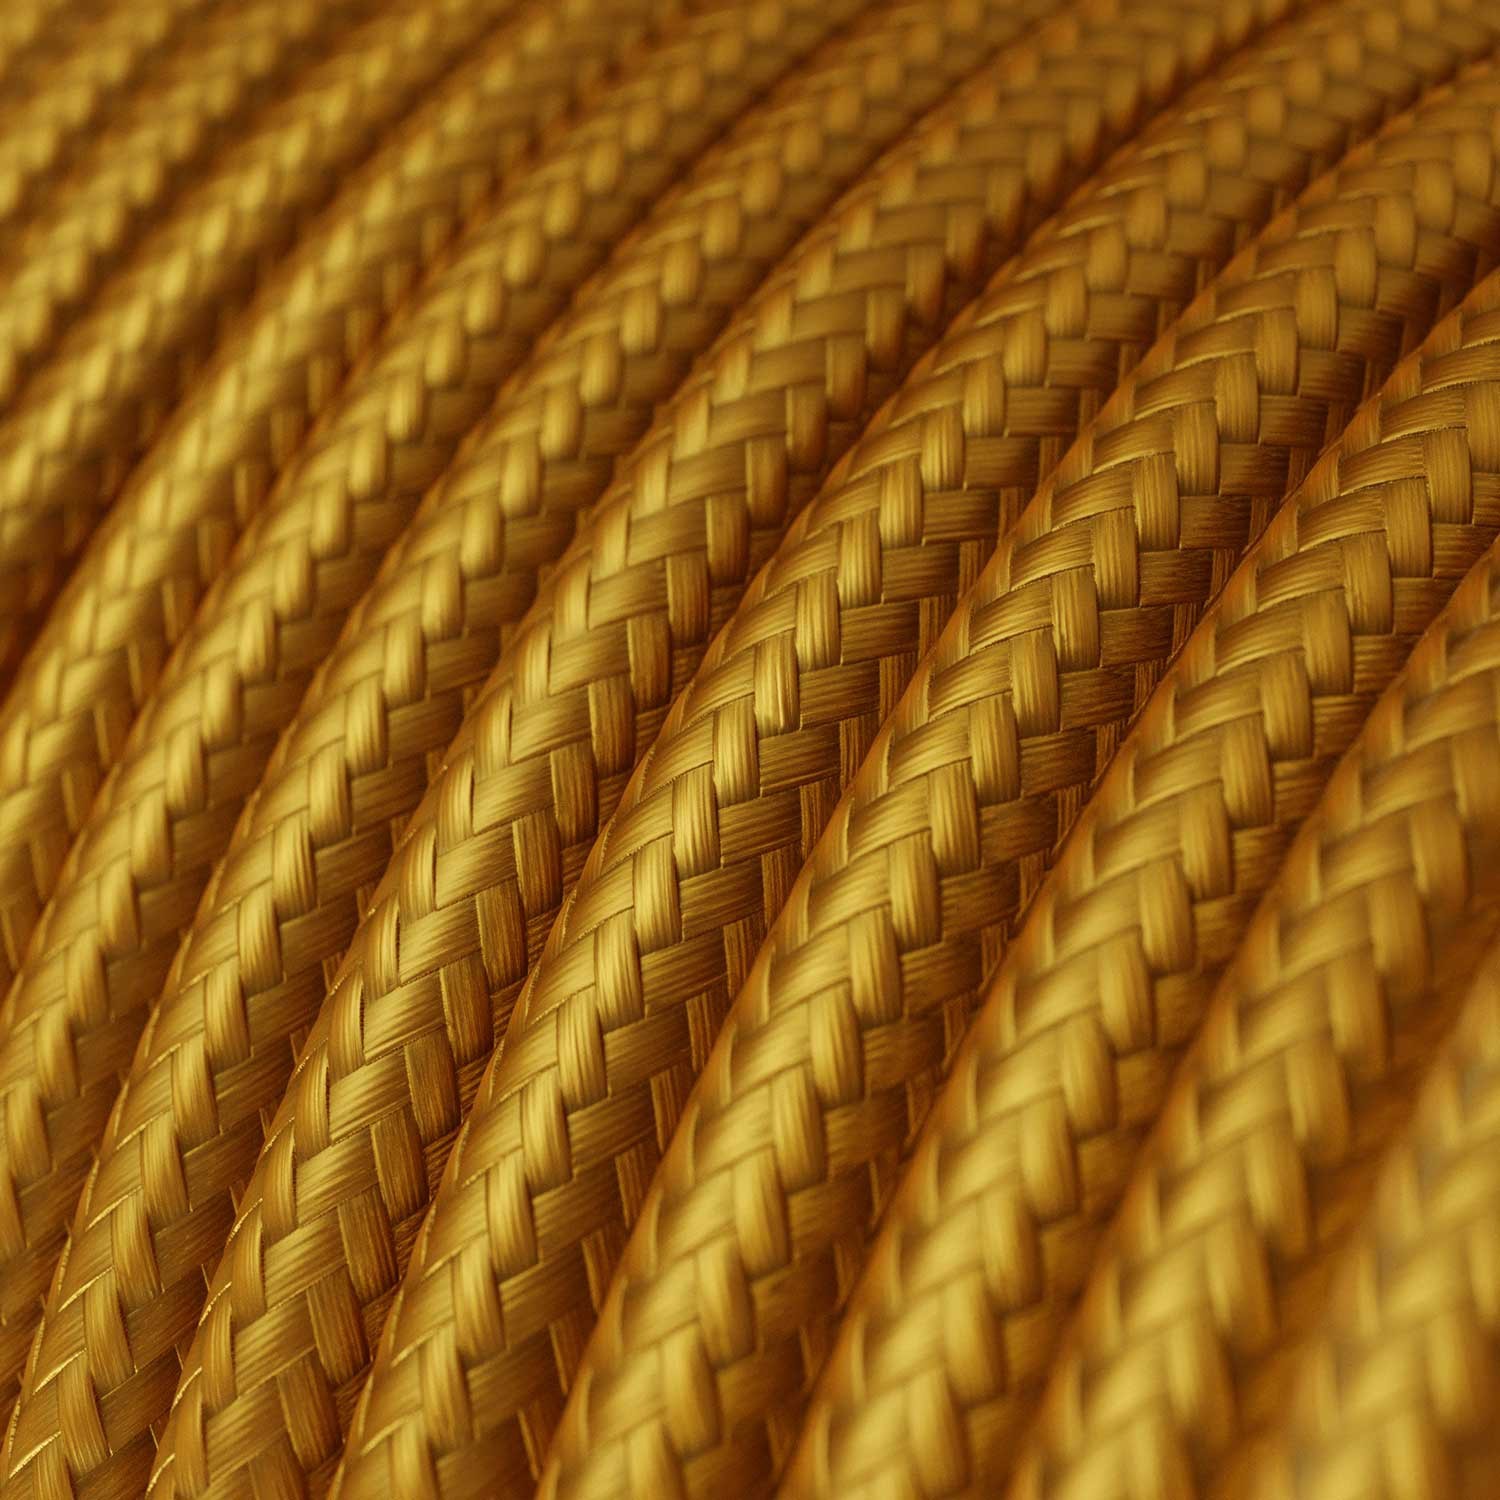 Cable Eléctrico Redondo Recubierto en tejido Efecto Seda Color Sólido, Dorado RM05